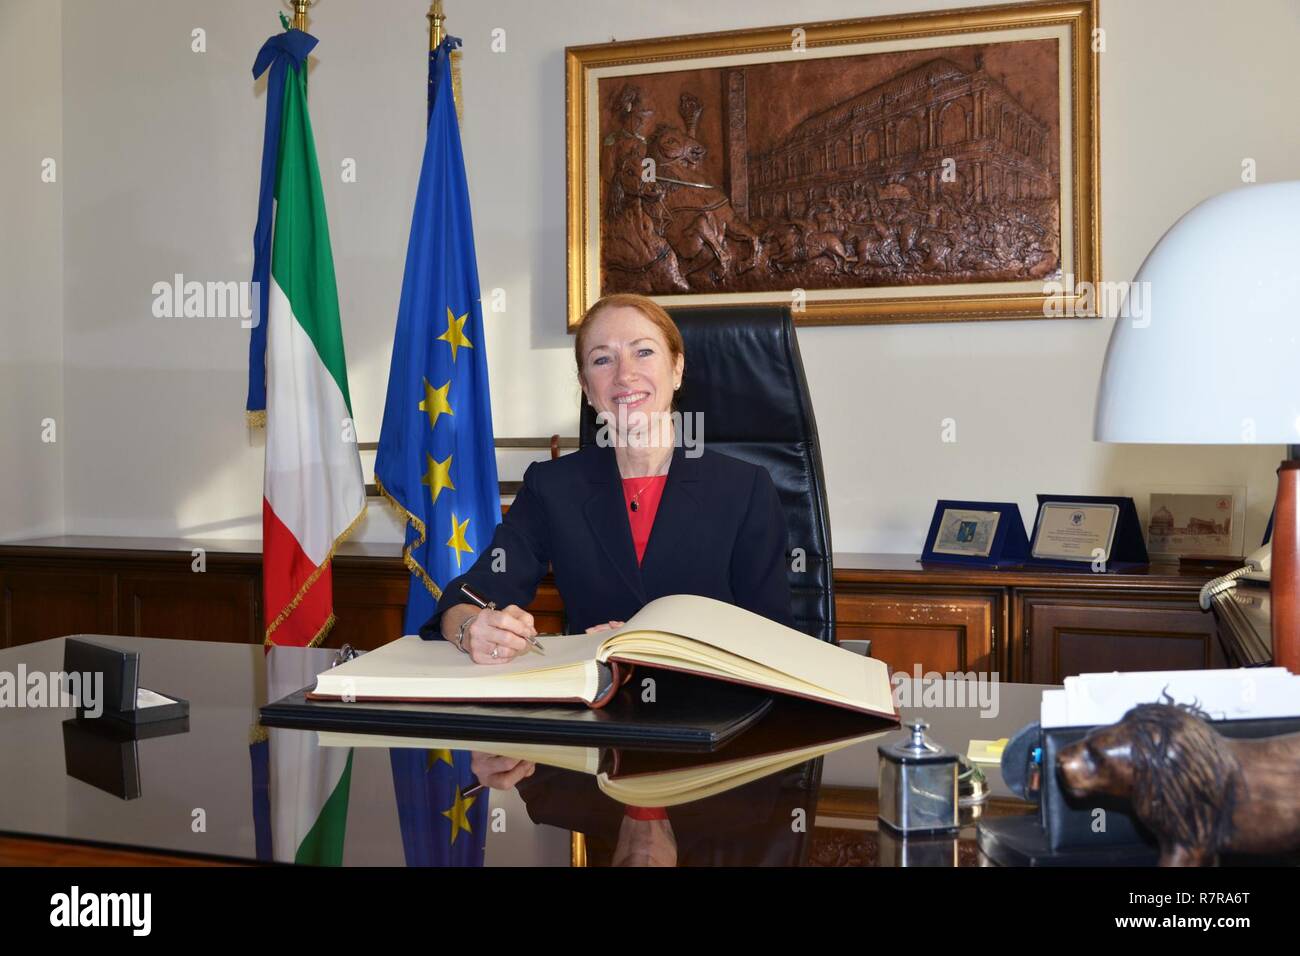 Mme Kelly Degnan, chargé d'Affaires ad interim de l'Ambassade et consulats des États-Unis Italie, signe le livre d'invité d'honneur lors de la visite au Centre d'excellence pour les unités de police de stabilité (COESPU) Vicenza, Italie, le 30 mars, 2017. Banque D'Images